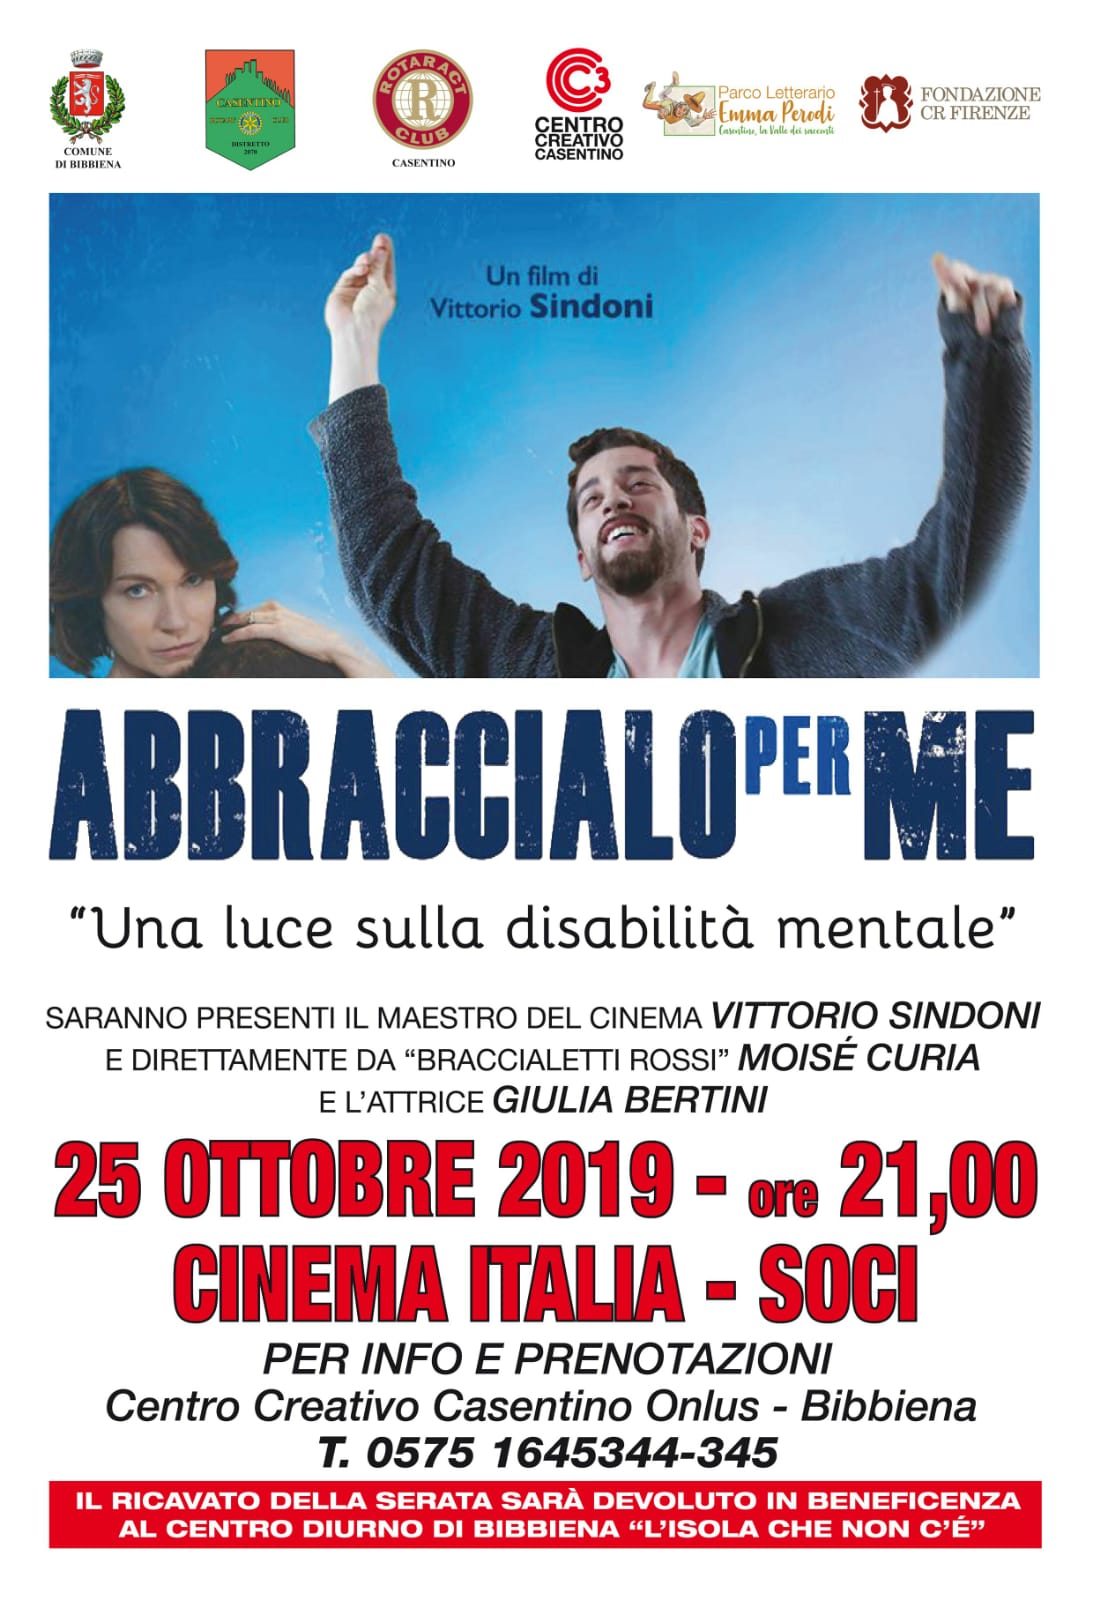 Al cinema Italia di Soci un evento sulla disabilità